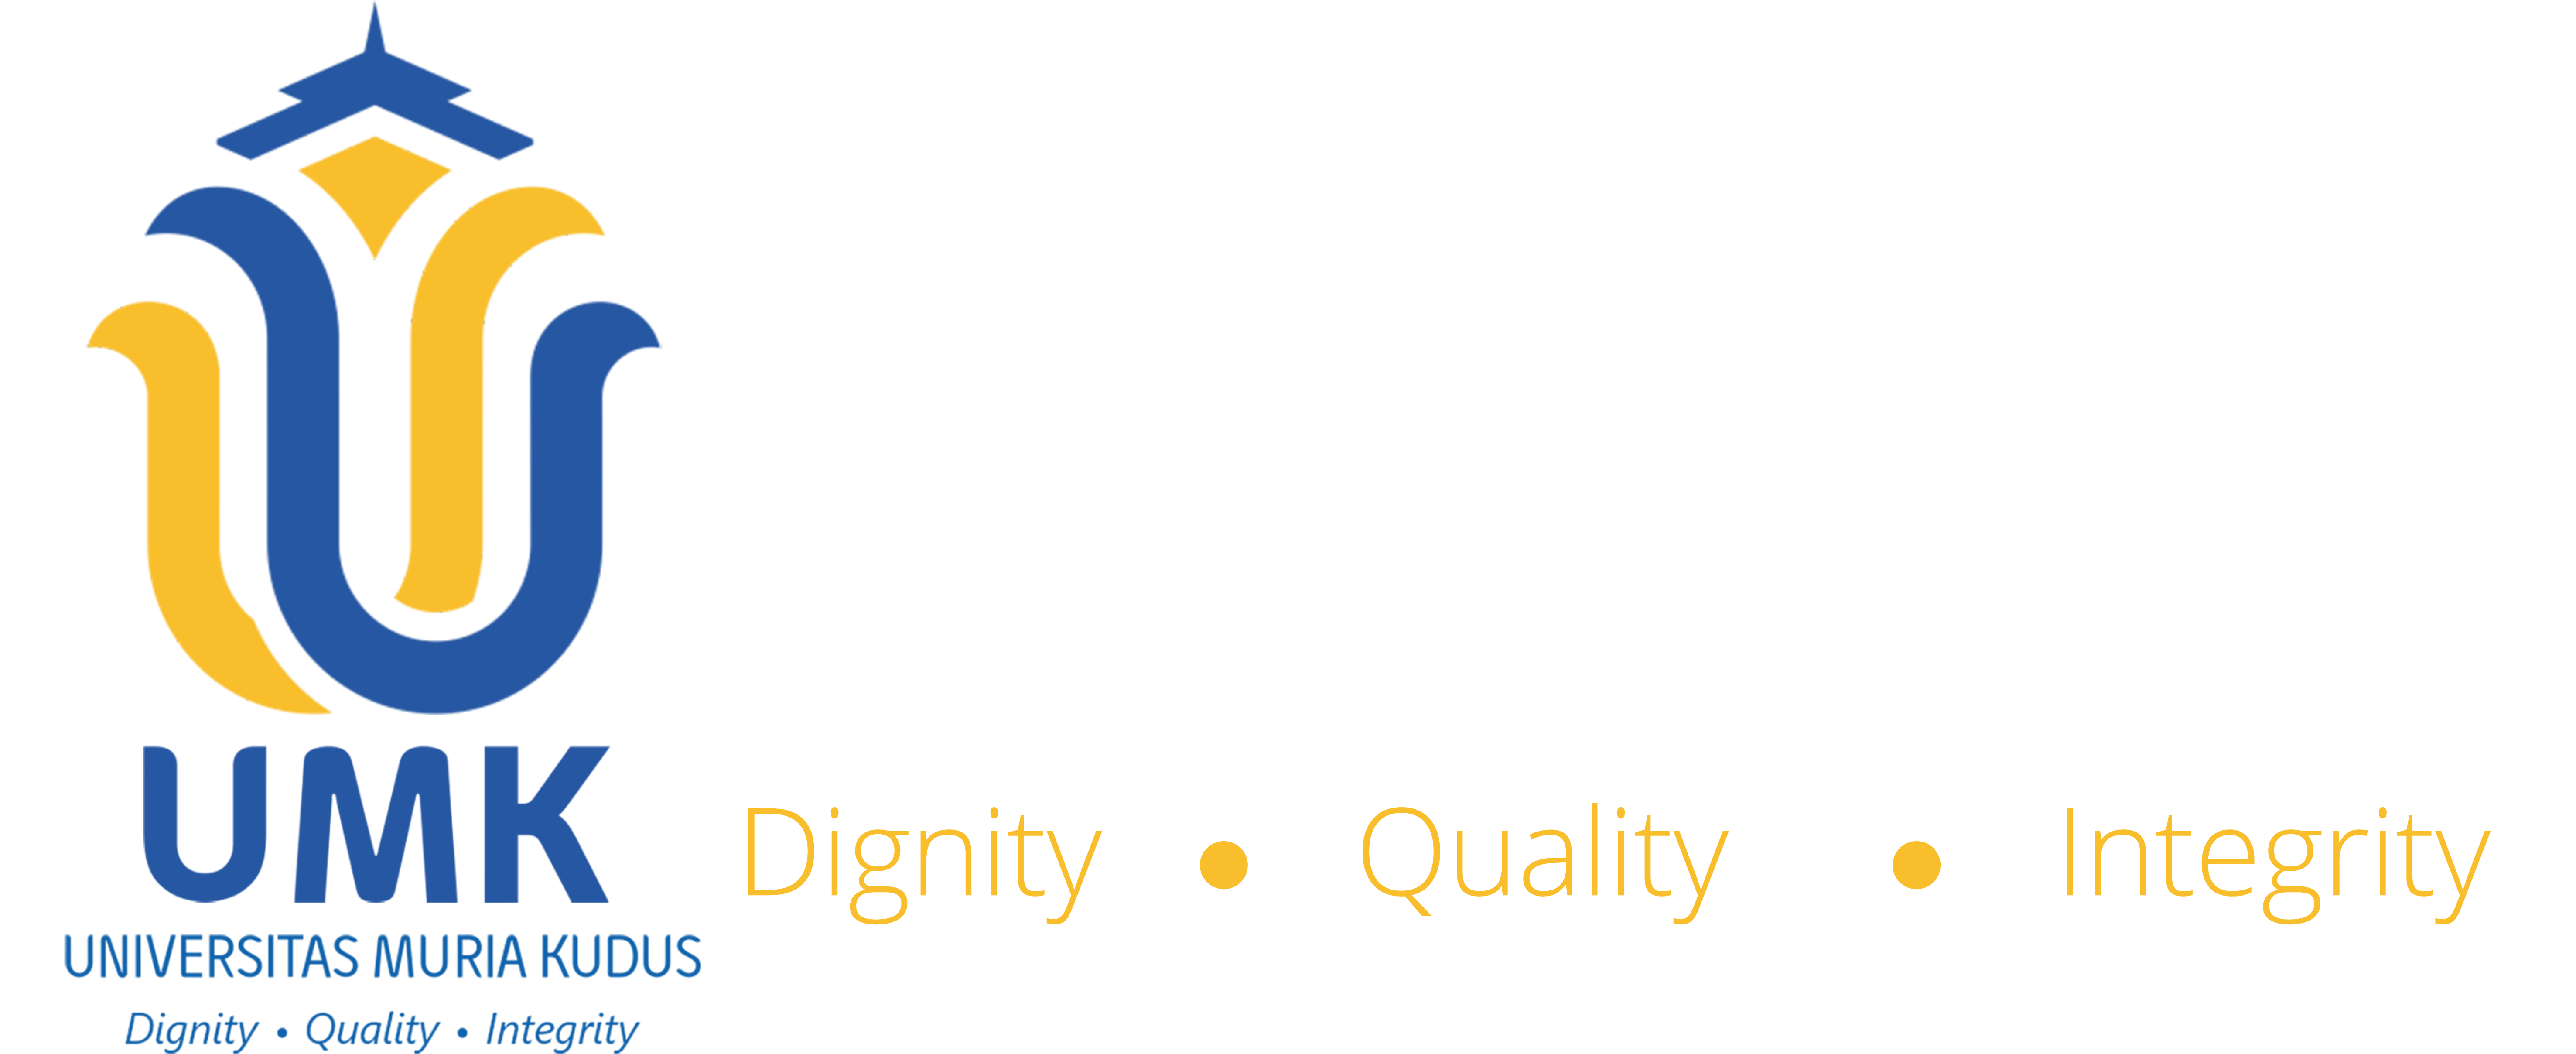 Magister Hukum Universitas Muria Kudus